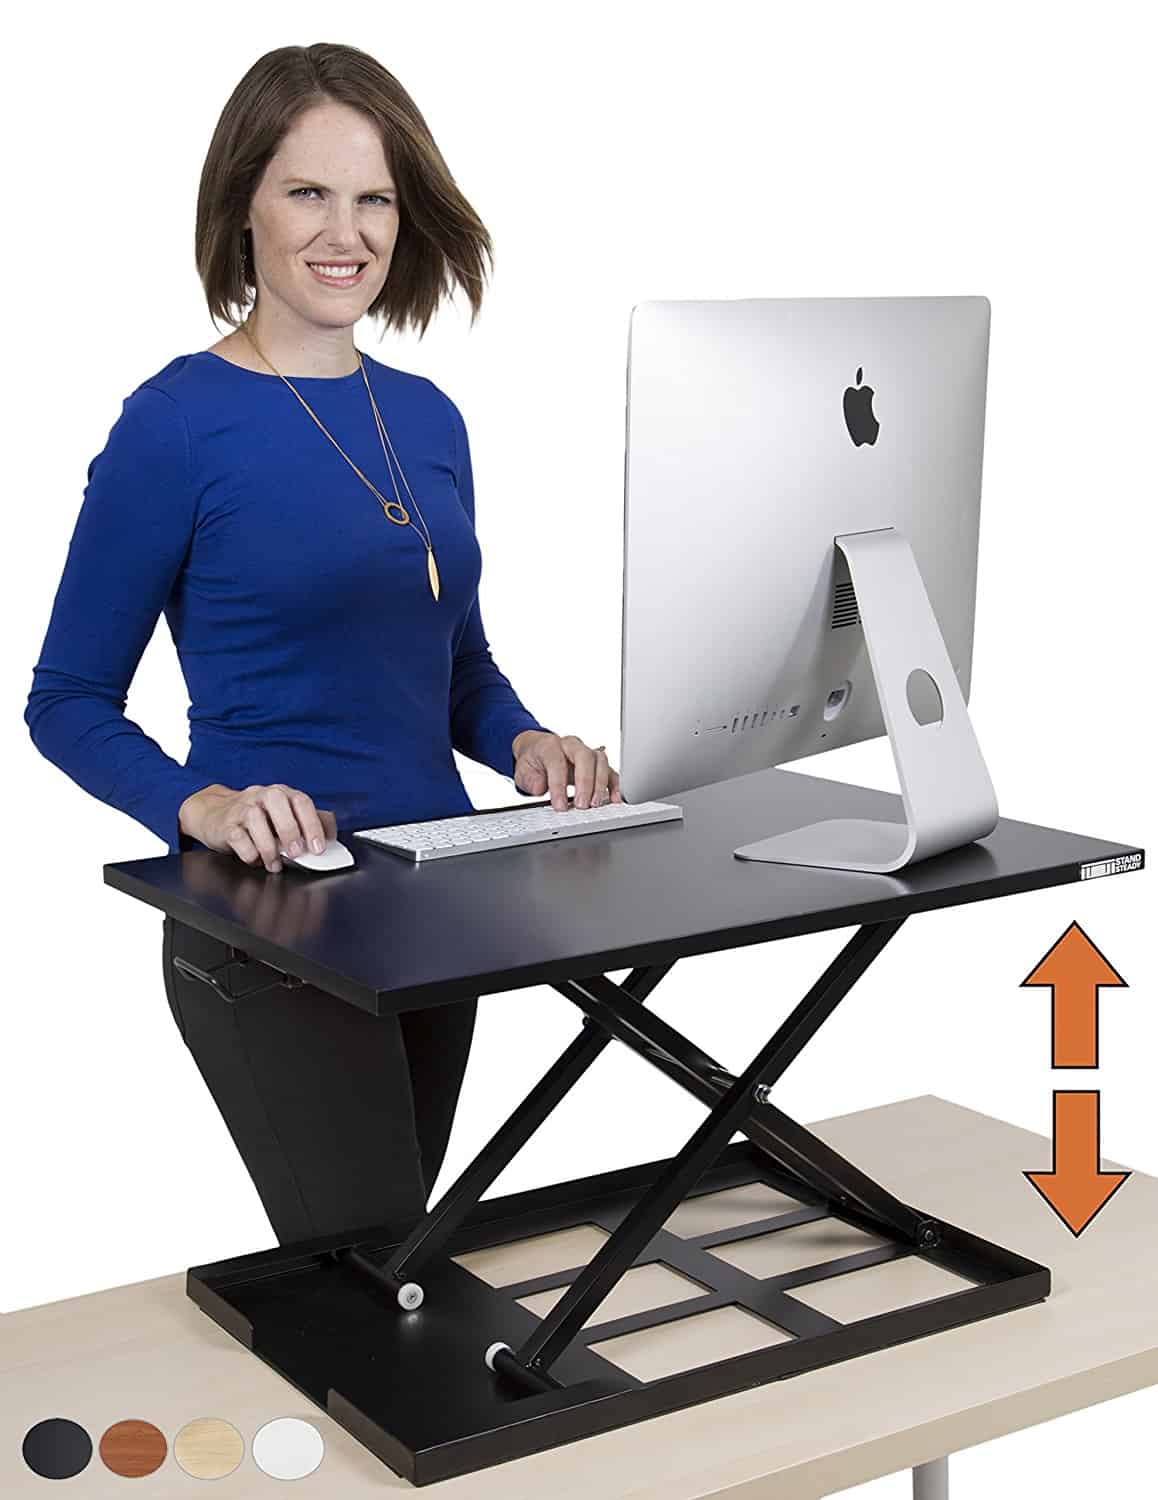 Стоячий столик. Компьютерный стол поднимающийся. Столик для ноутбука стоя. Стоячий стол. Компьютерный стол стоячий.